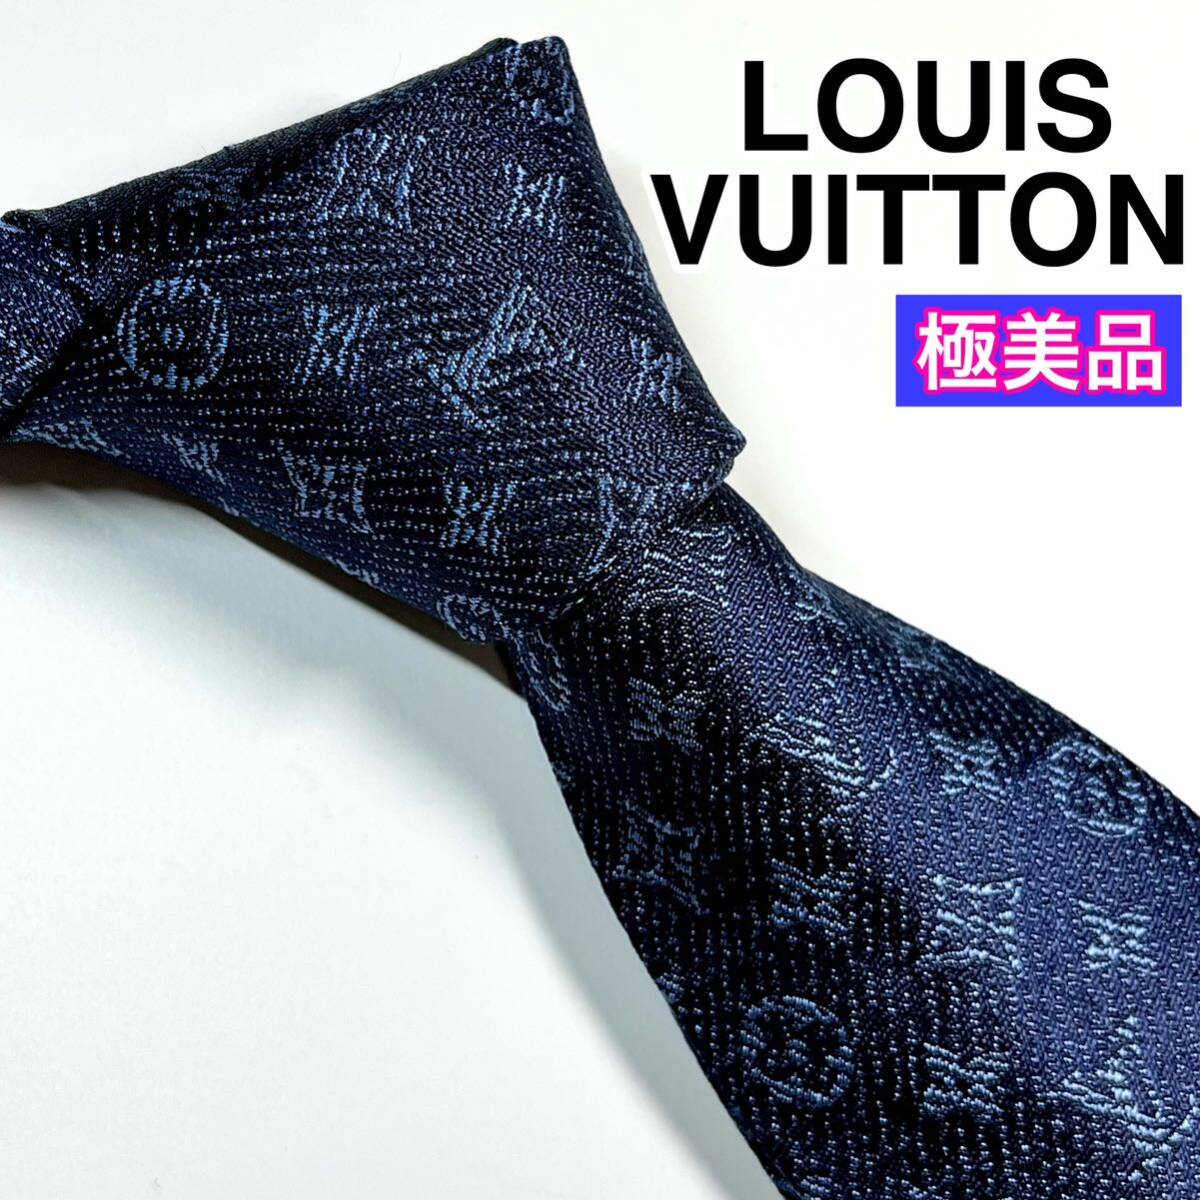  превосходный товар LOUIS VUITTON Louis Vuitton галстук монограмма редкий 